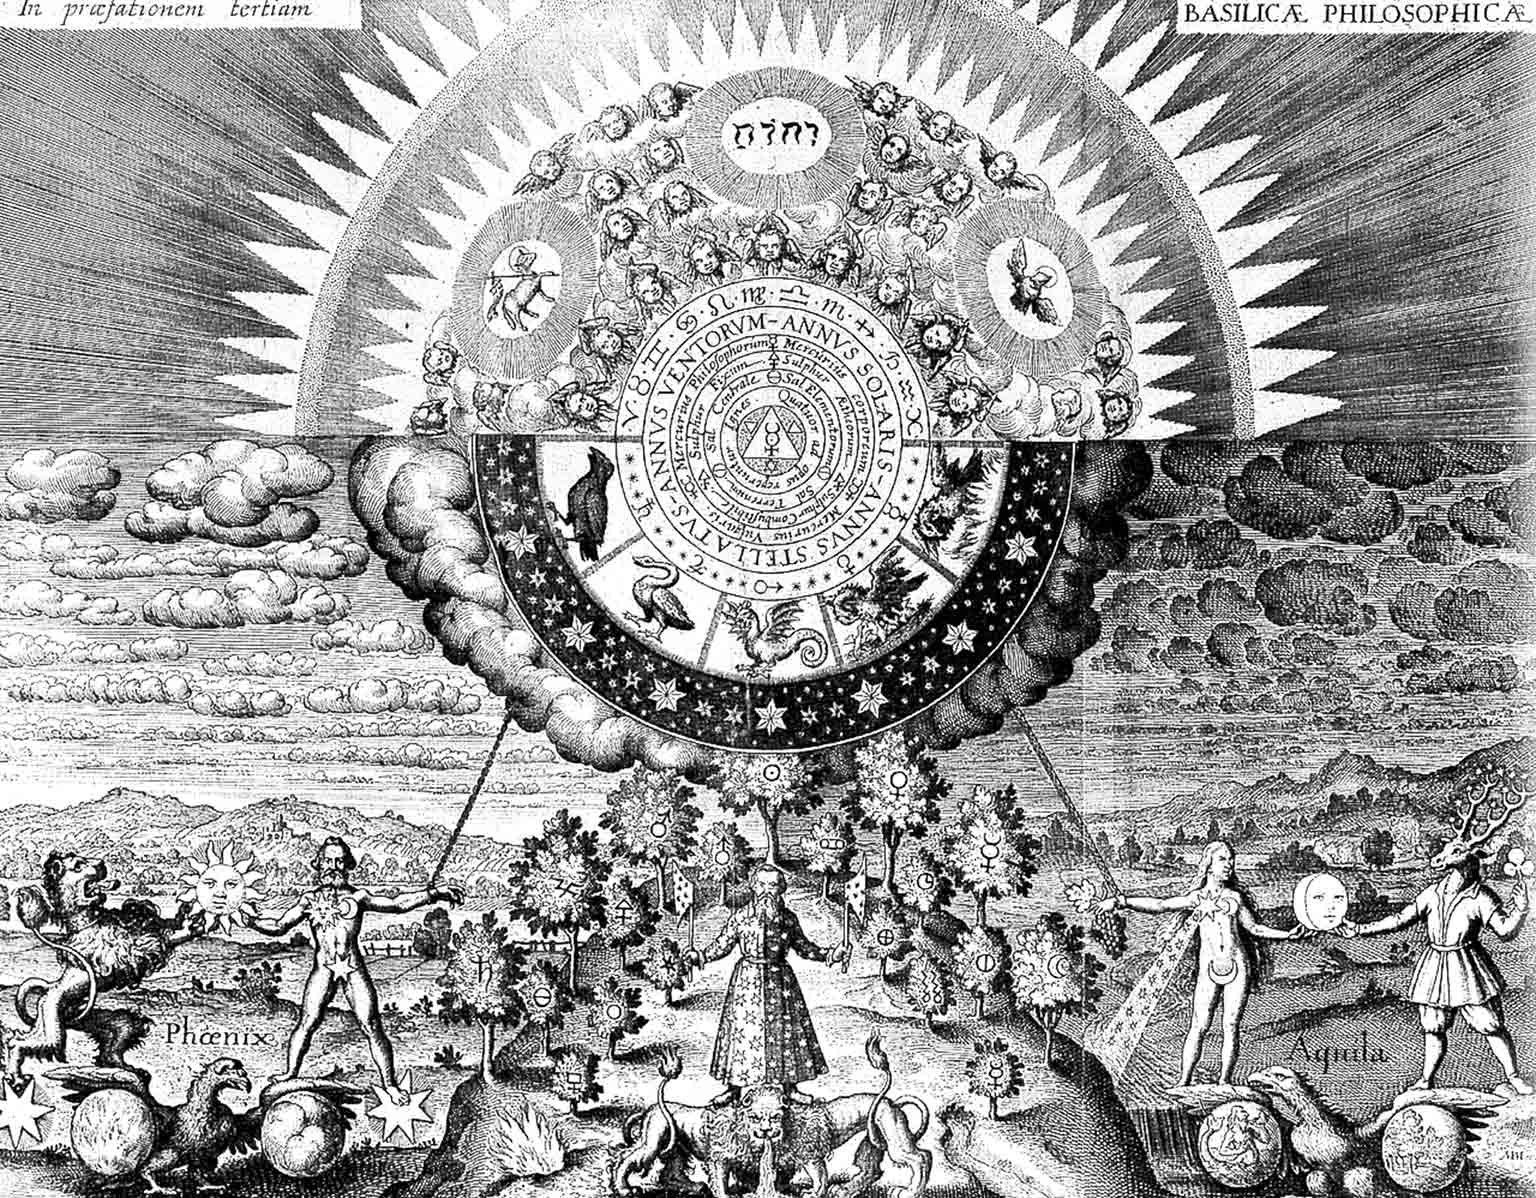 Alchemische illustratie in de Basilica Philosophica uit 1618